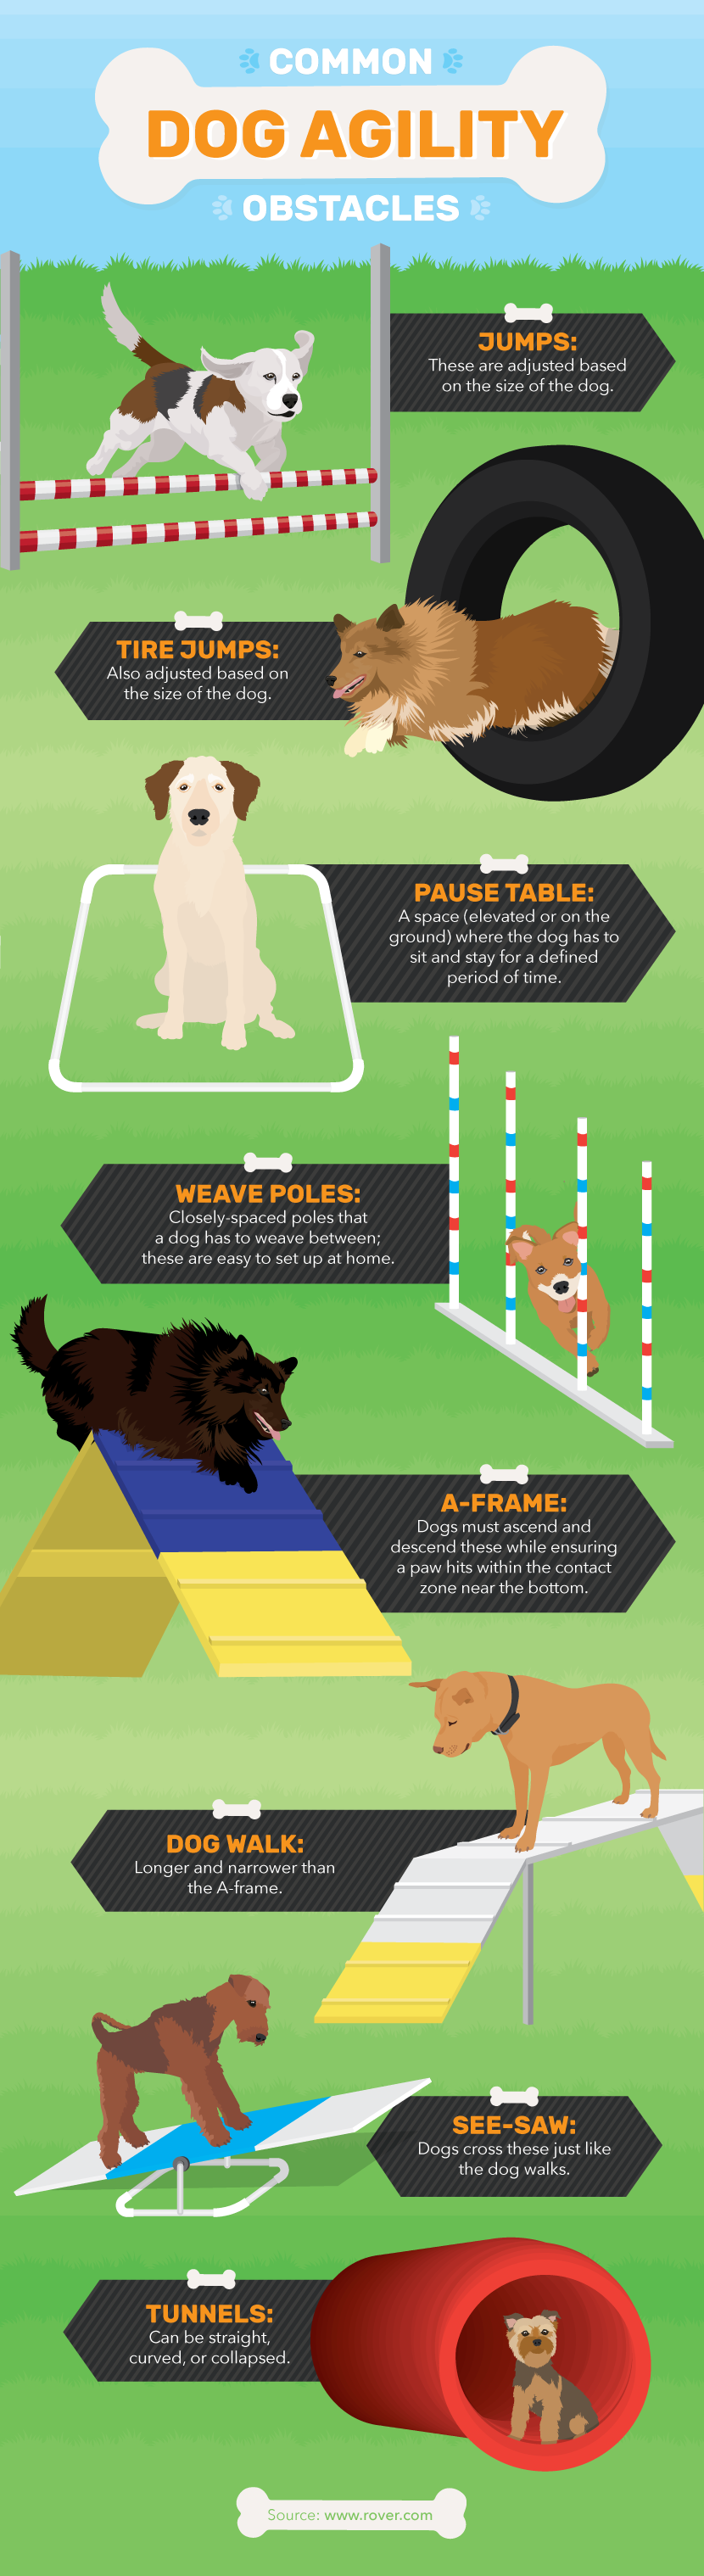 Dog Agility Obstacle Course - Dog Agility Training